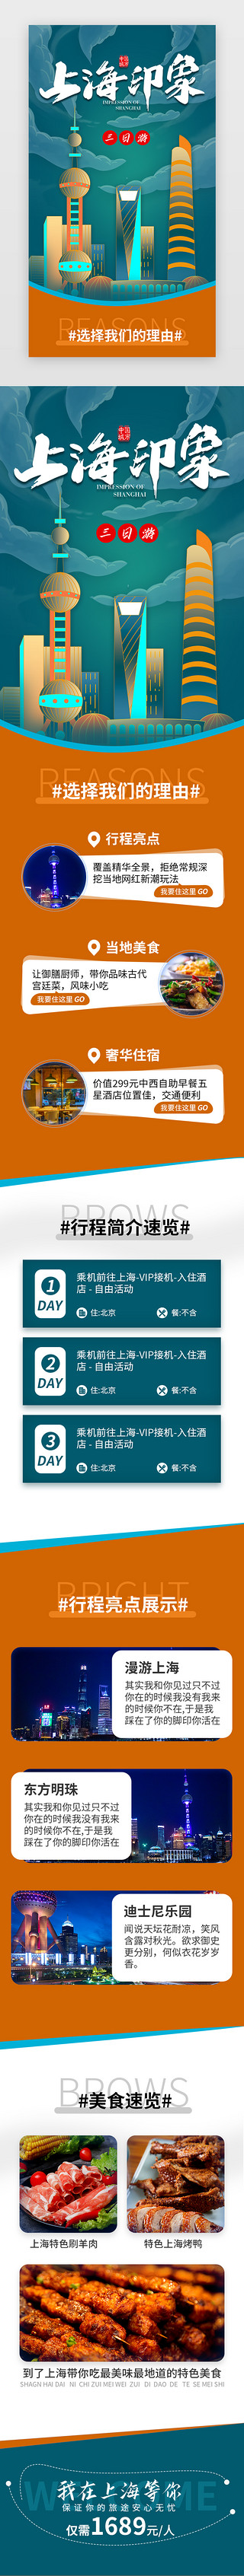 旅游活动海报UI设计素材_青色国潮上海印象出游H5活动海报